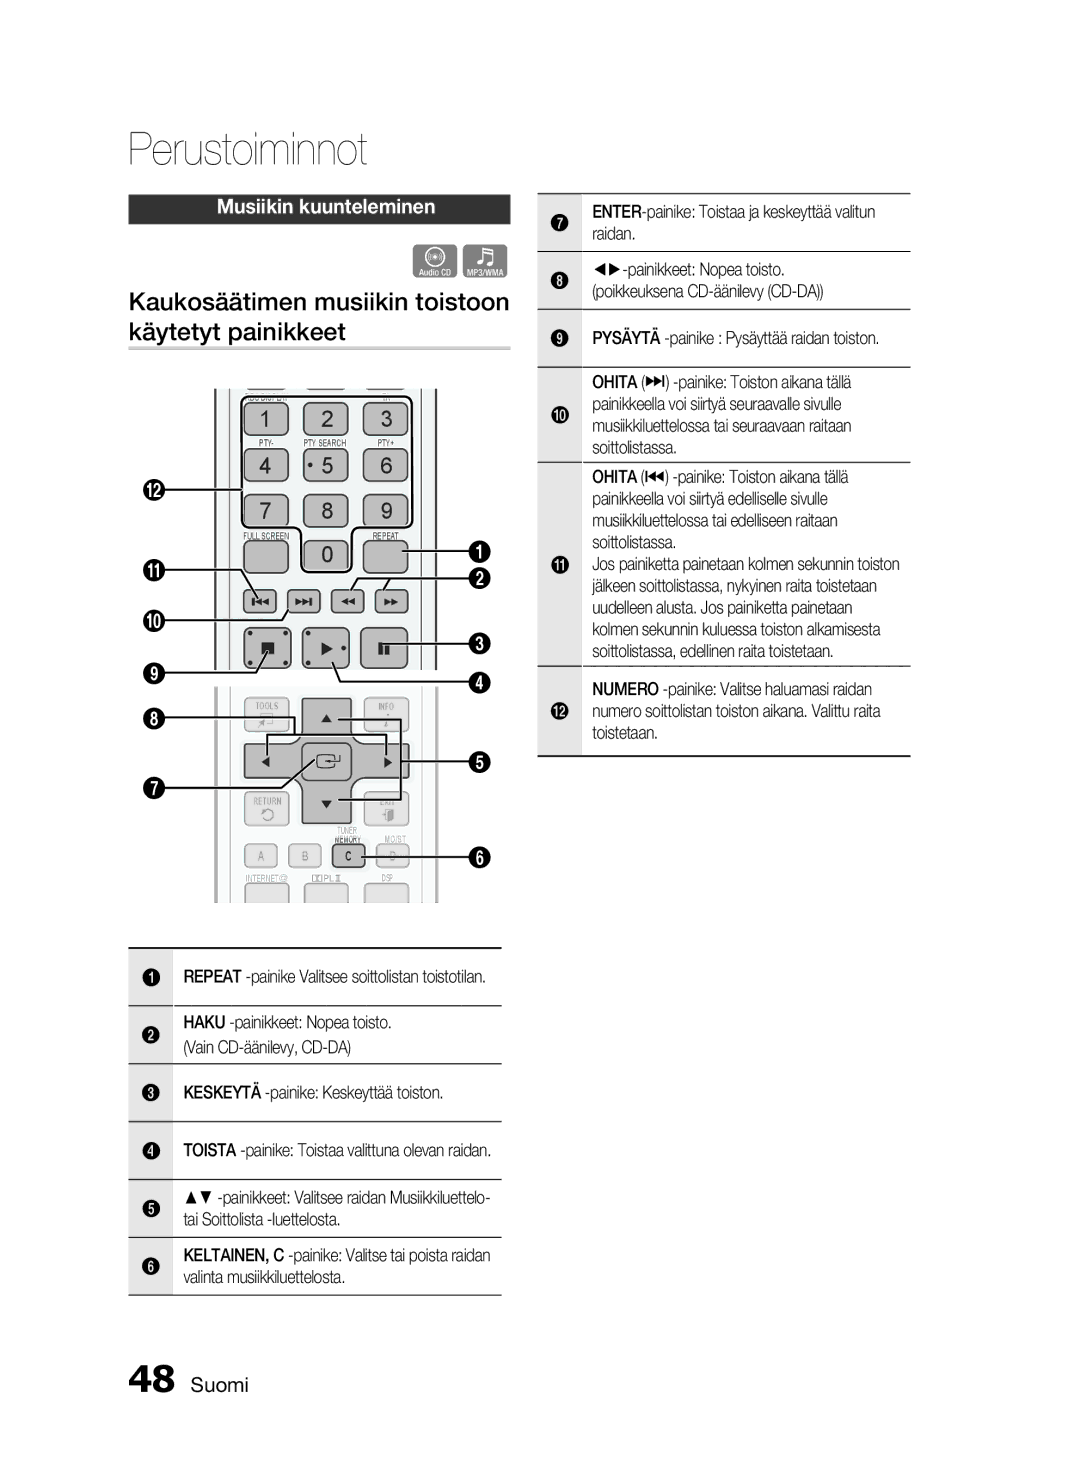 Samsung HT-C6500/XEE manual Kaukosäätimen musiikin toistoon käytetyt painikkeet, Musiikin kuunteleminen 